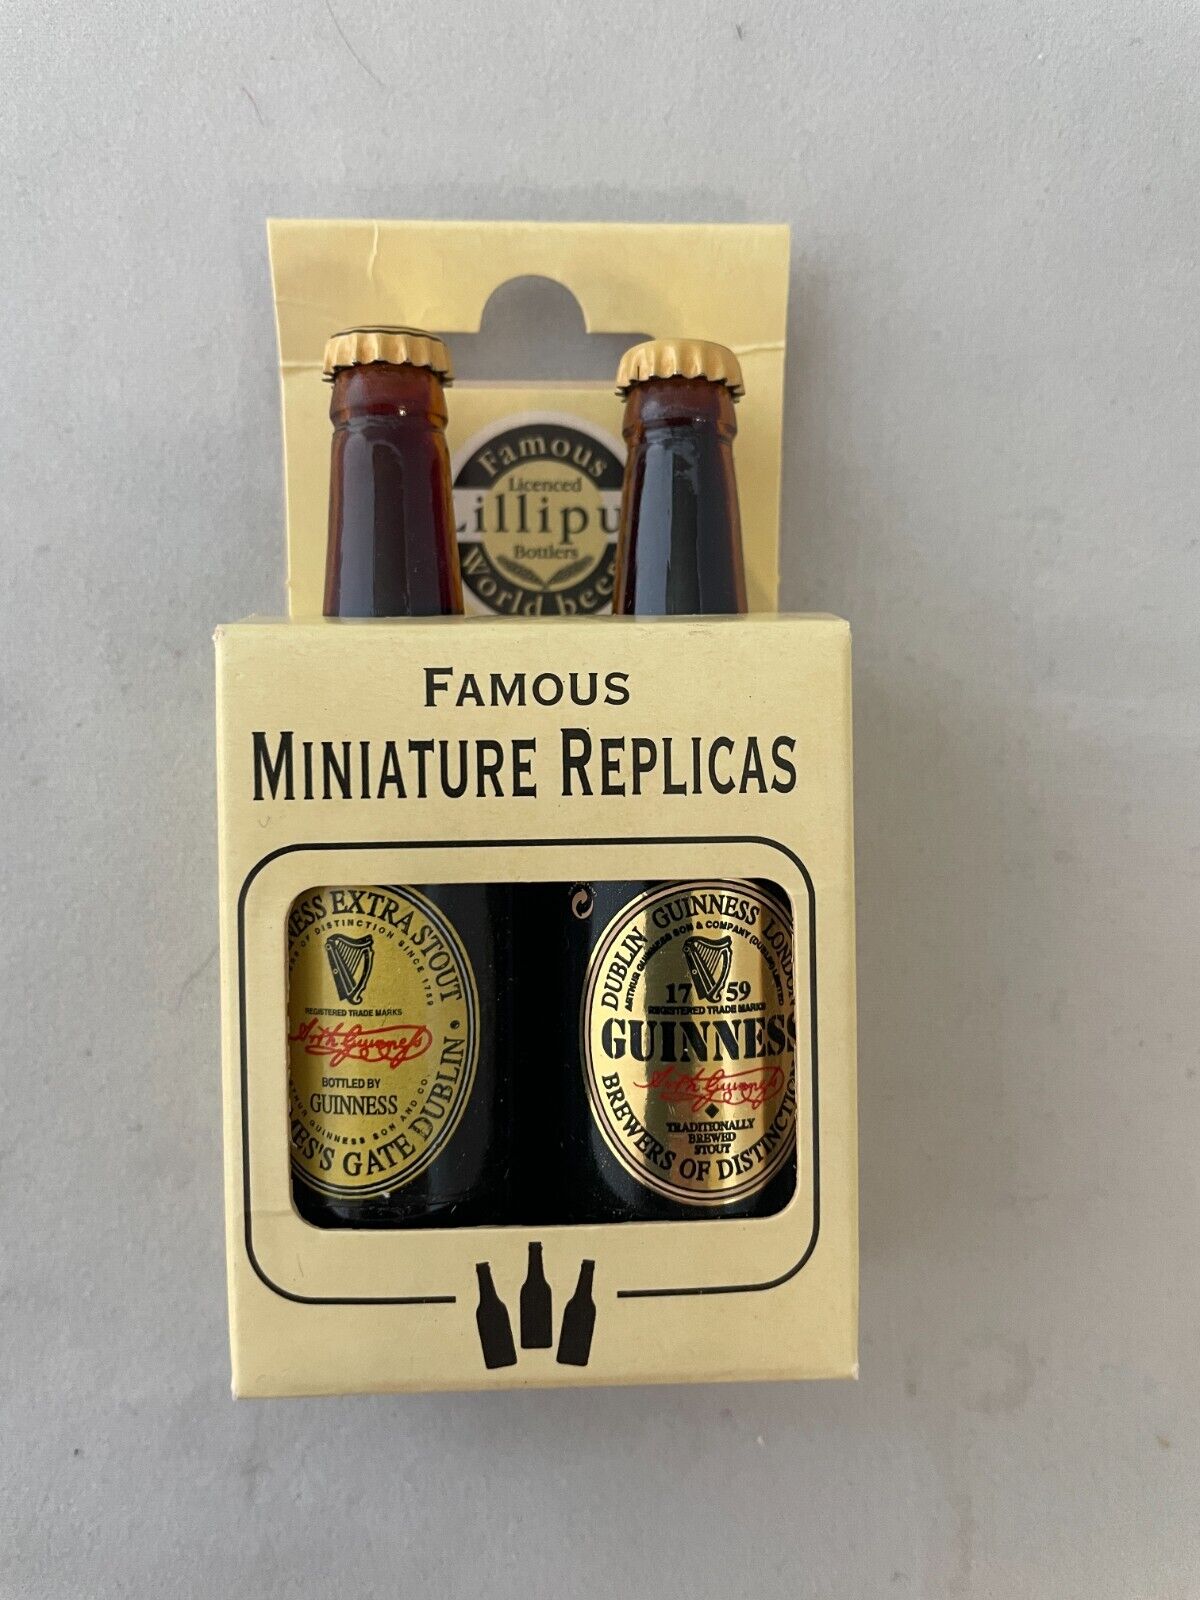 Lilliput 2-pack Guinness Miniature Bottles - New